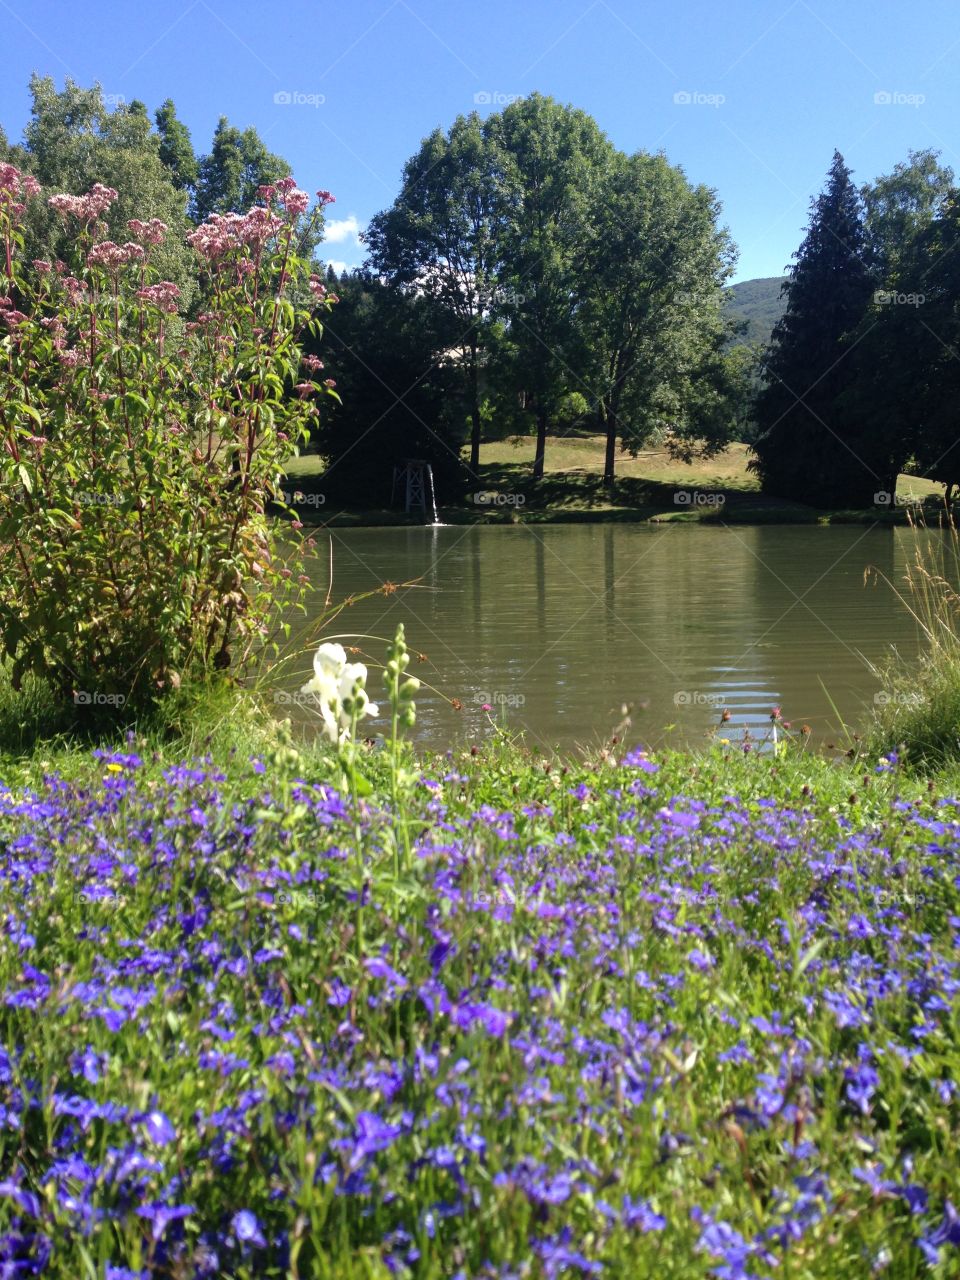 Purple flowering field and lake